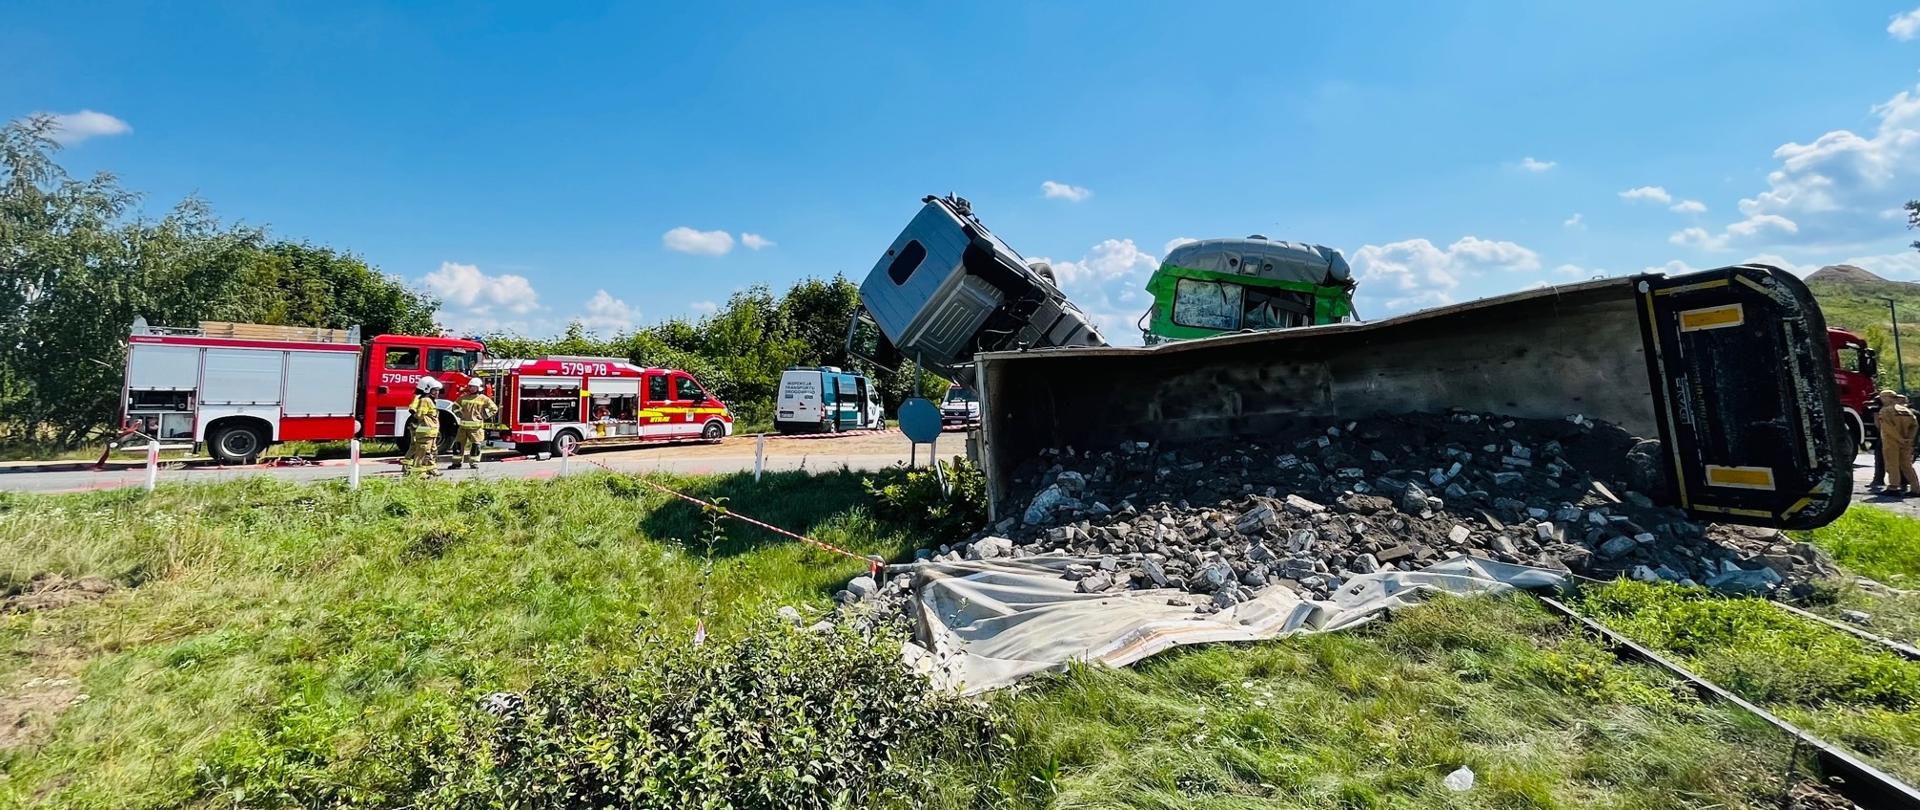 Na niestrzeżonym przejeździe kolejowo-drogowym w Dalanówku koło Płońska, doszło do wypadku. Samochód ciężarowy z podpiętą naczepą-wywrotką zderzył się z nadjeżdżającym szynobusem relacji Nowy Dwór Mazowiecki – Sierpc. 